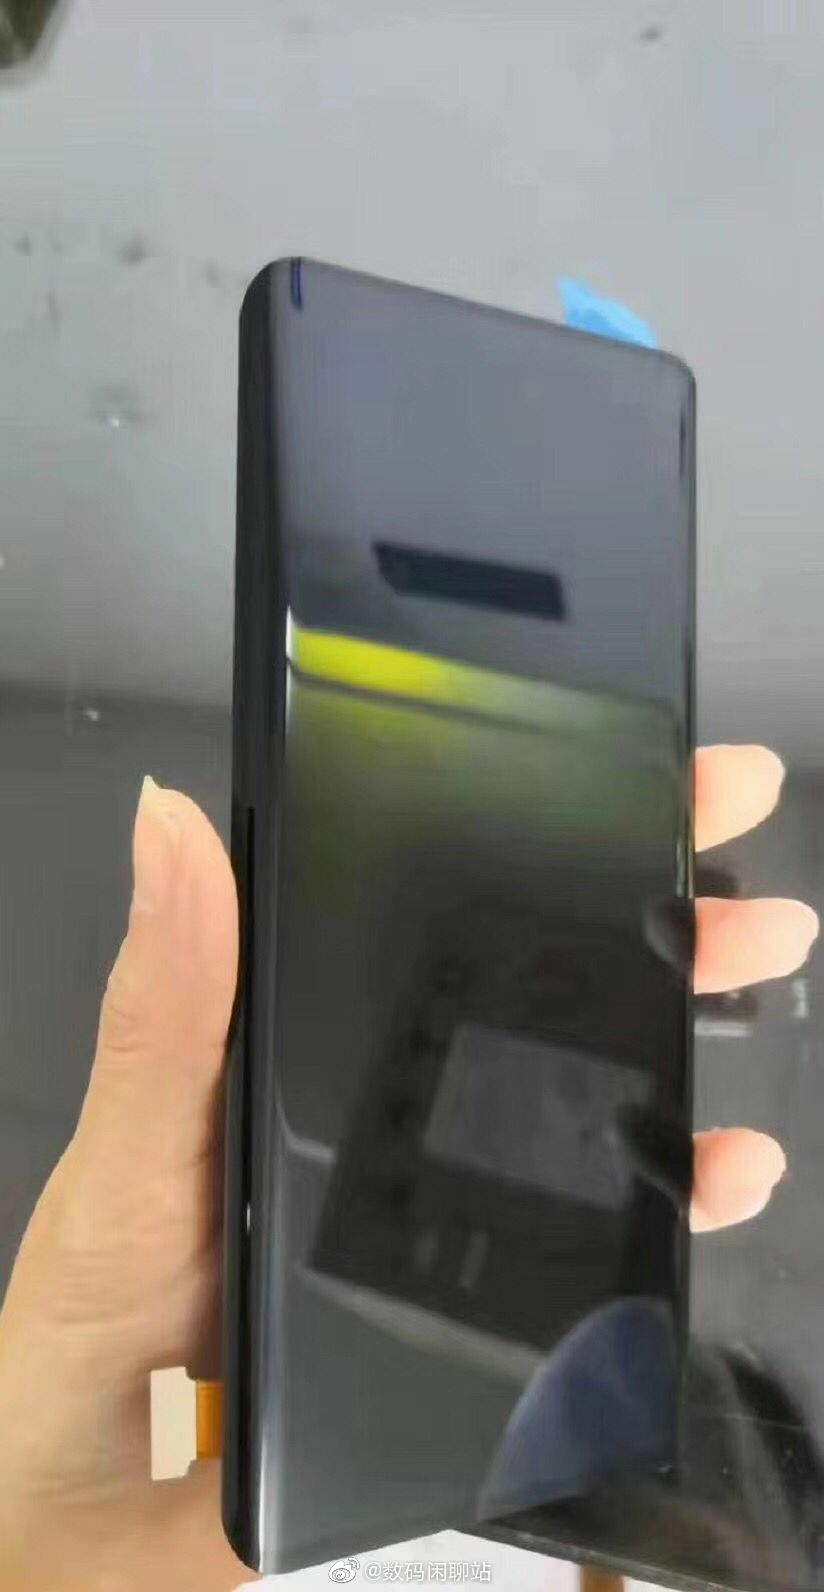 Huawei Mate 30 Pro notch iPhone kiedy premiera plotki przecieki wycieki